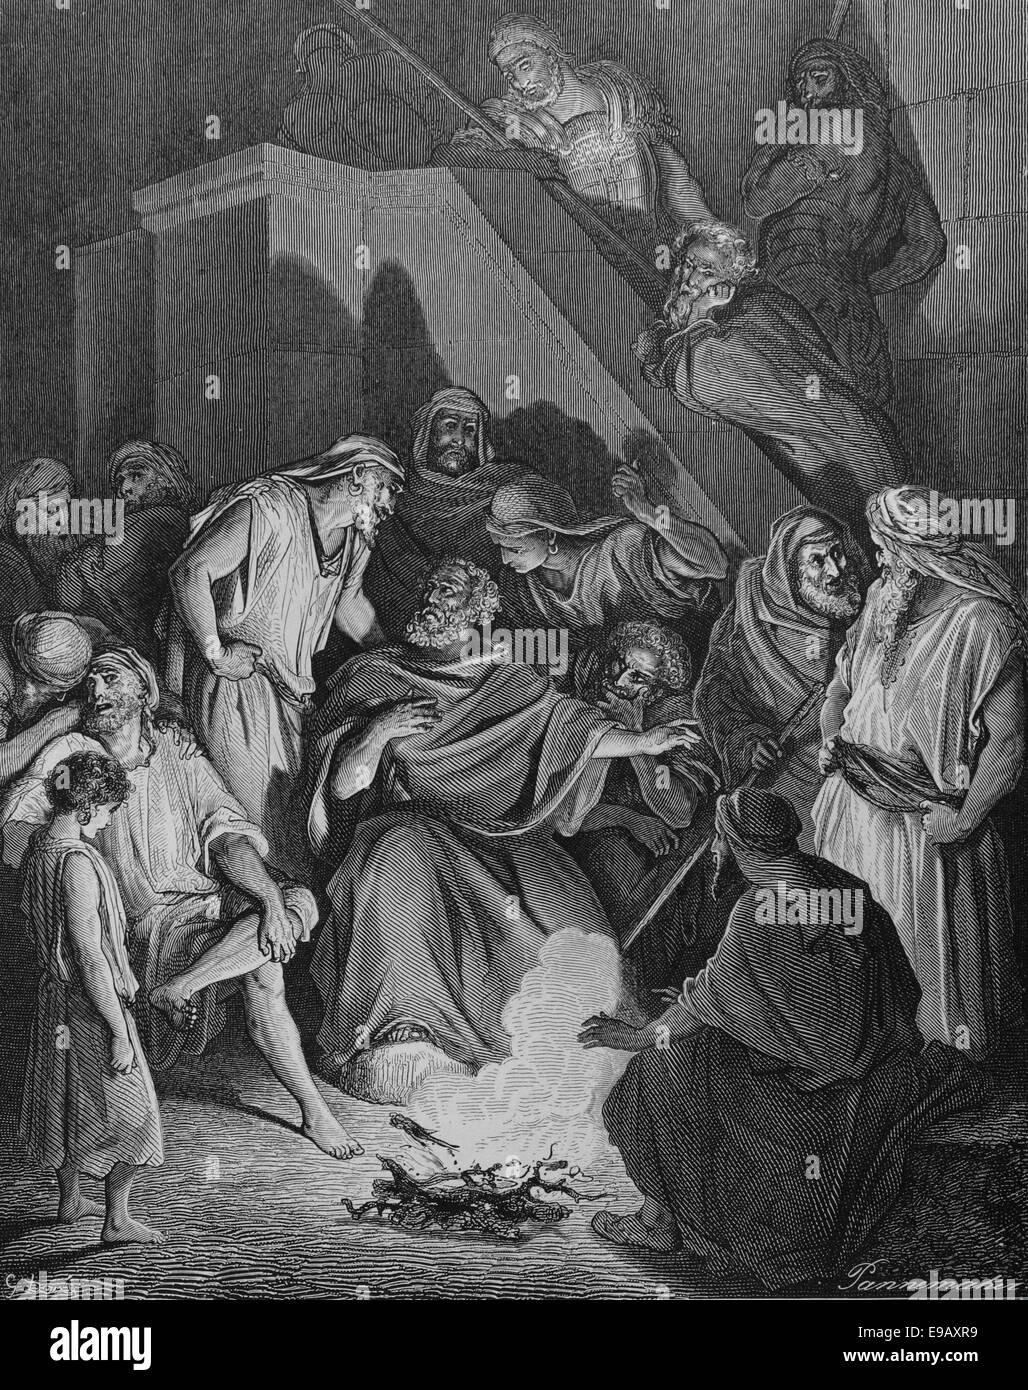 Illustrierte Bibel. Neuen Testaments. St. Petrus Christus zu leugnen. Zeichnung von Gustave Dore (1832-1883). des 19. Jahrhunderts. Gravur. Stockfoto